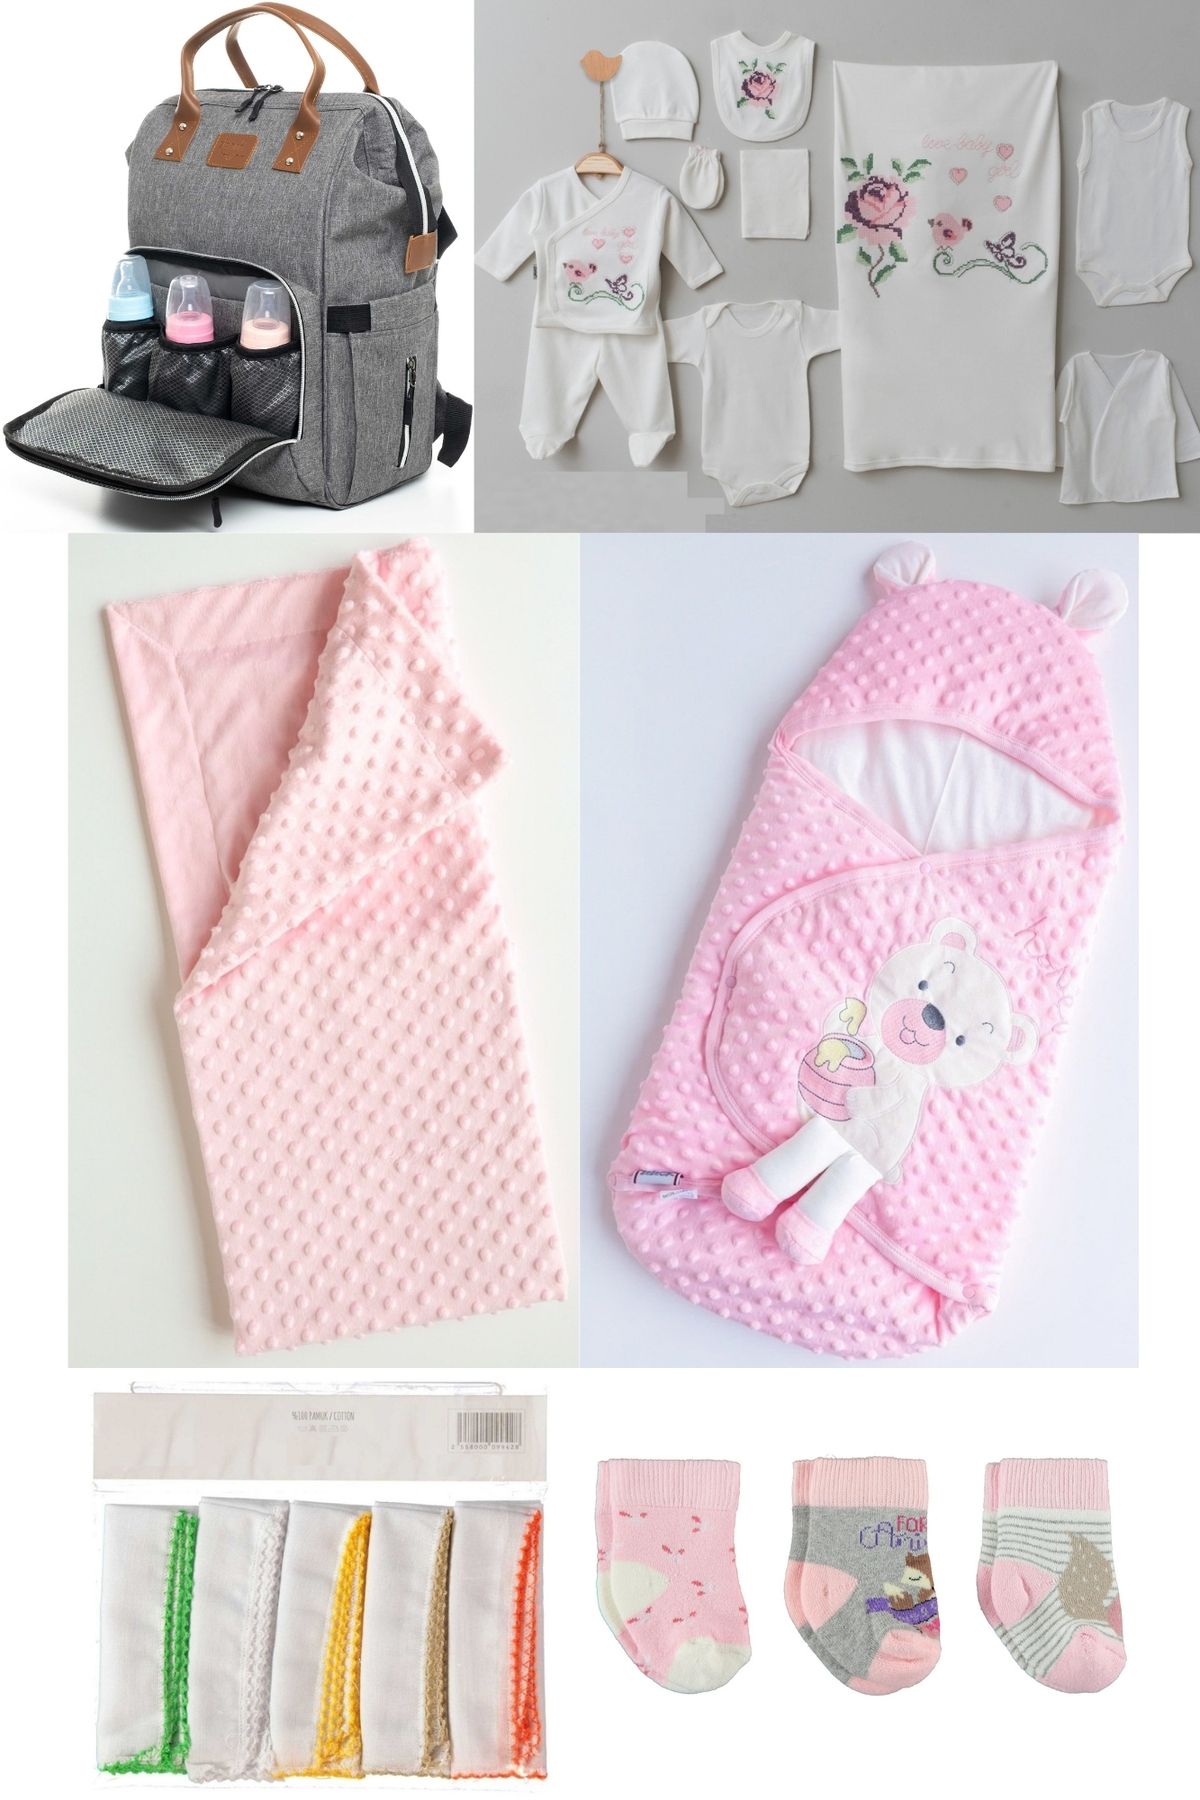 Necix's 6 lı Sevimli Ayılar Doğum Set 10’lu Hastane Çıkış Bebek Çantası Kundak Battaniye Mendil ve Çorap Set